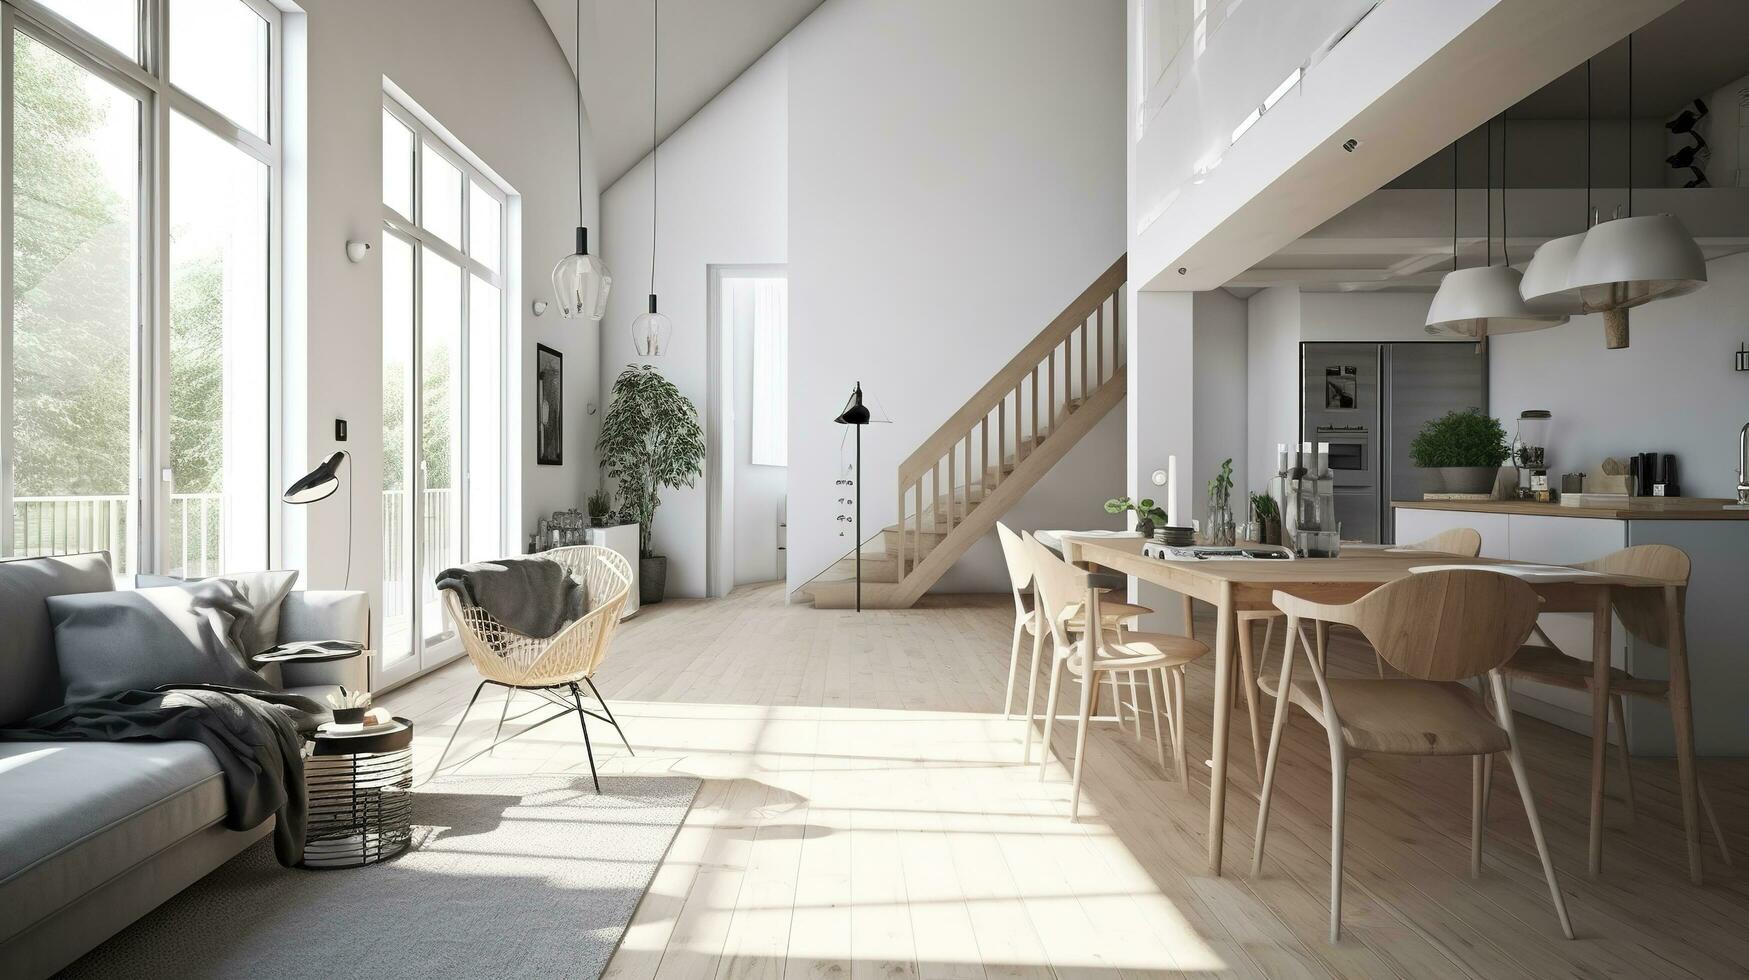 interior projeto, uma perspectiva do uma vivo quarto e uma cozinha com a ilha, ampla janelas com natural luz, moderno mobília, clarabóia, moderno minimalista projeto, gerar ai foto